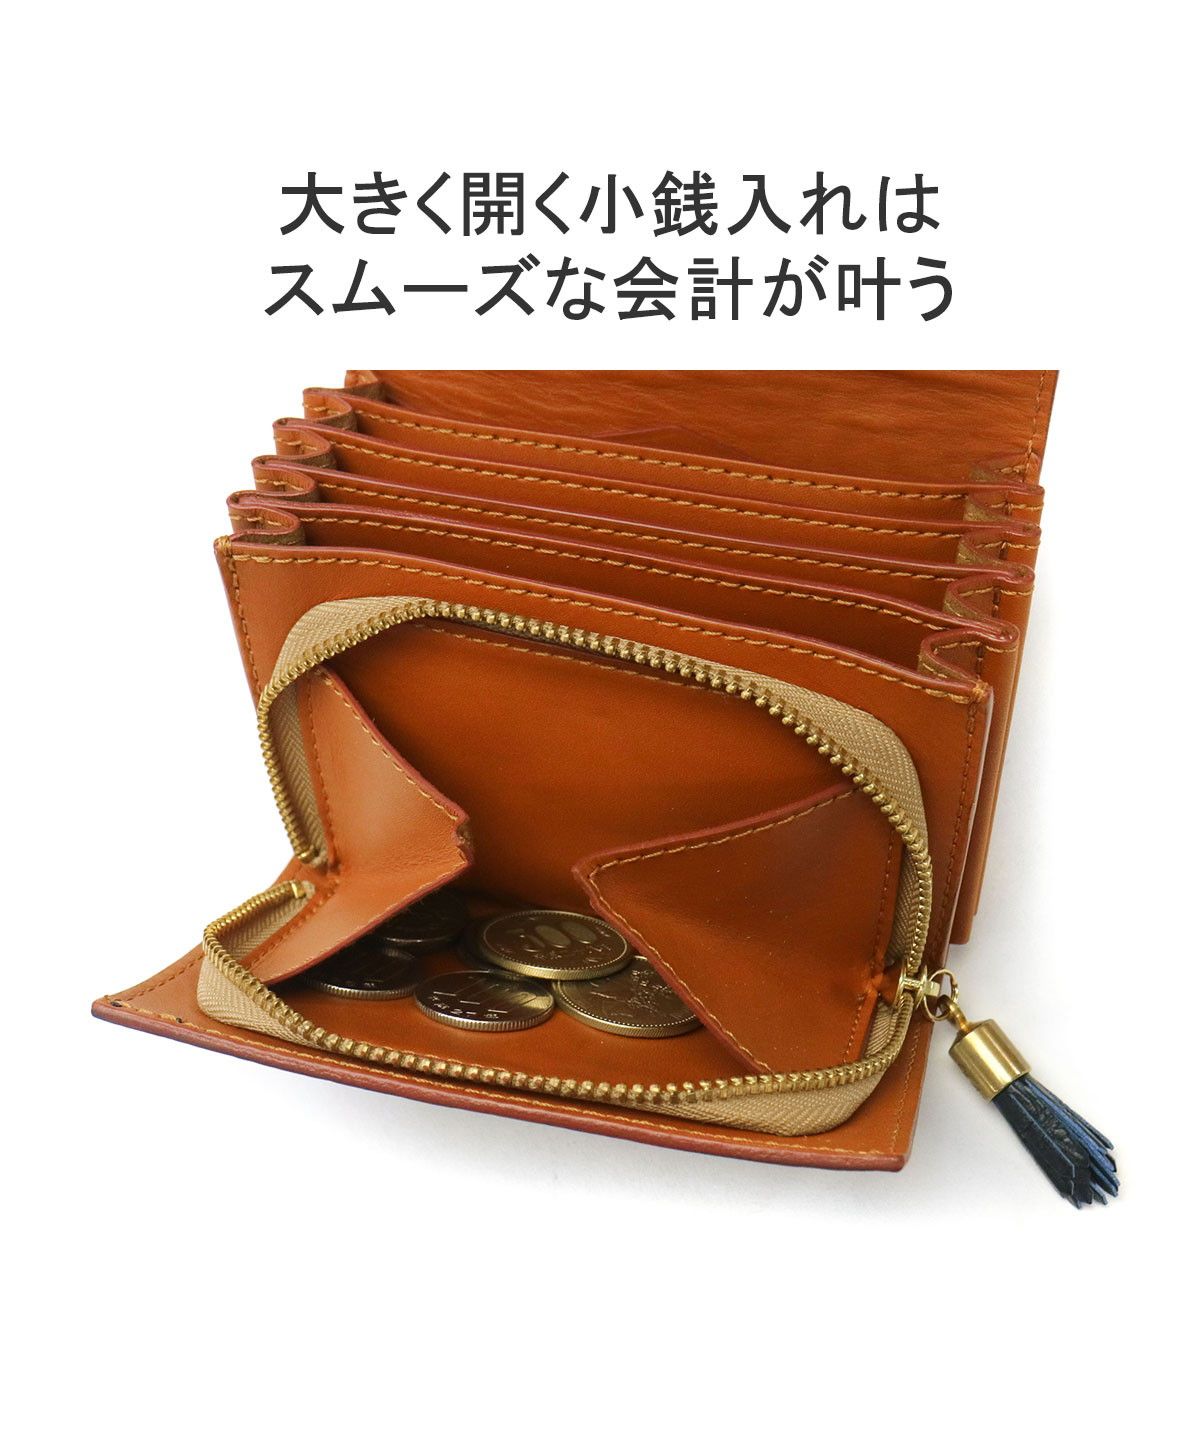 日本正規品】 フェリージ 二つ折り財布 Felisi SA 二つ折り 財布